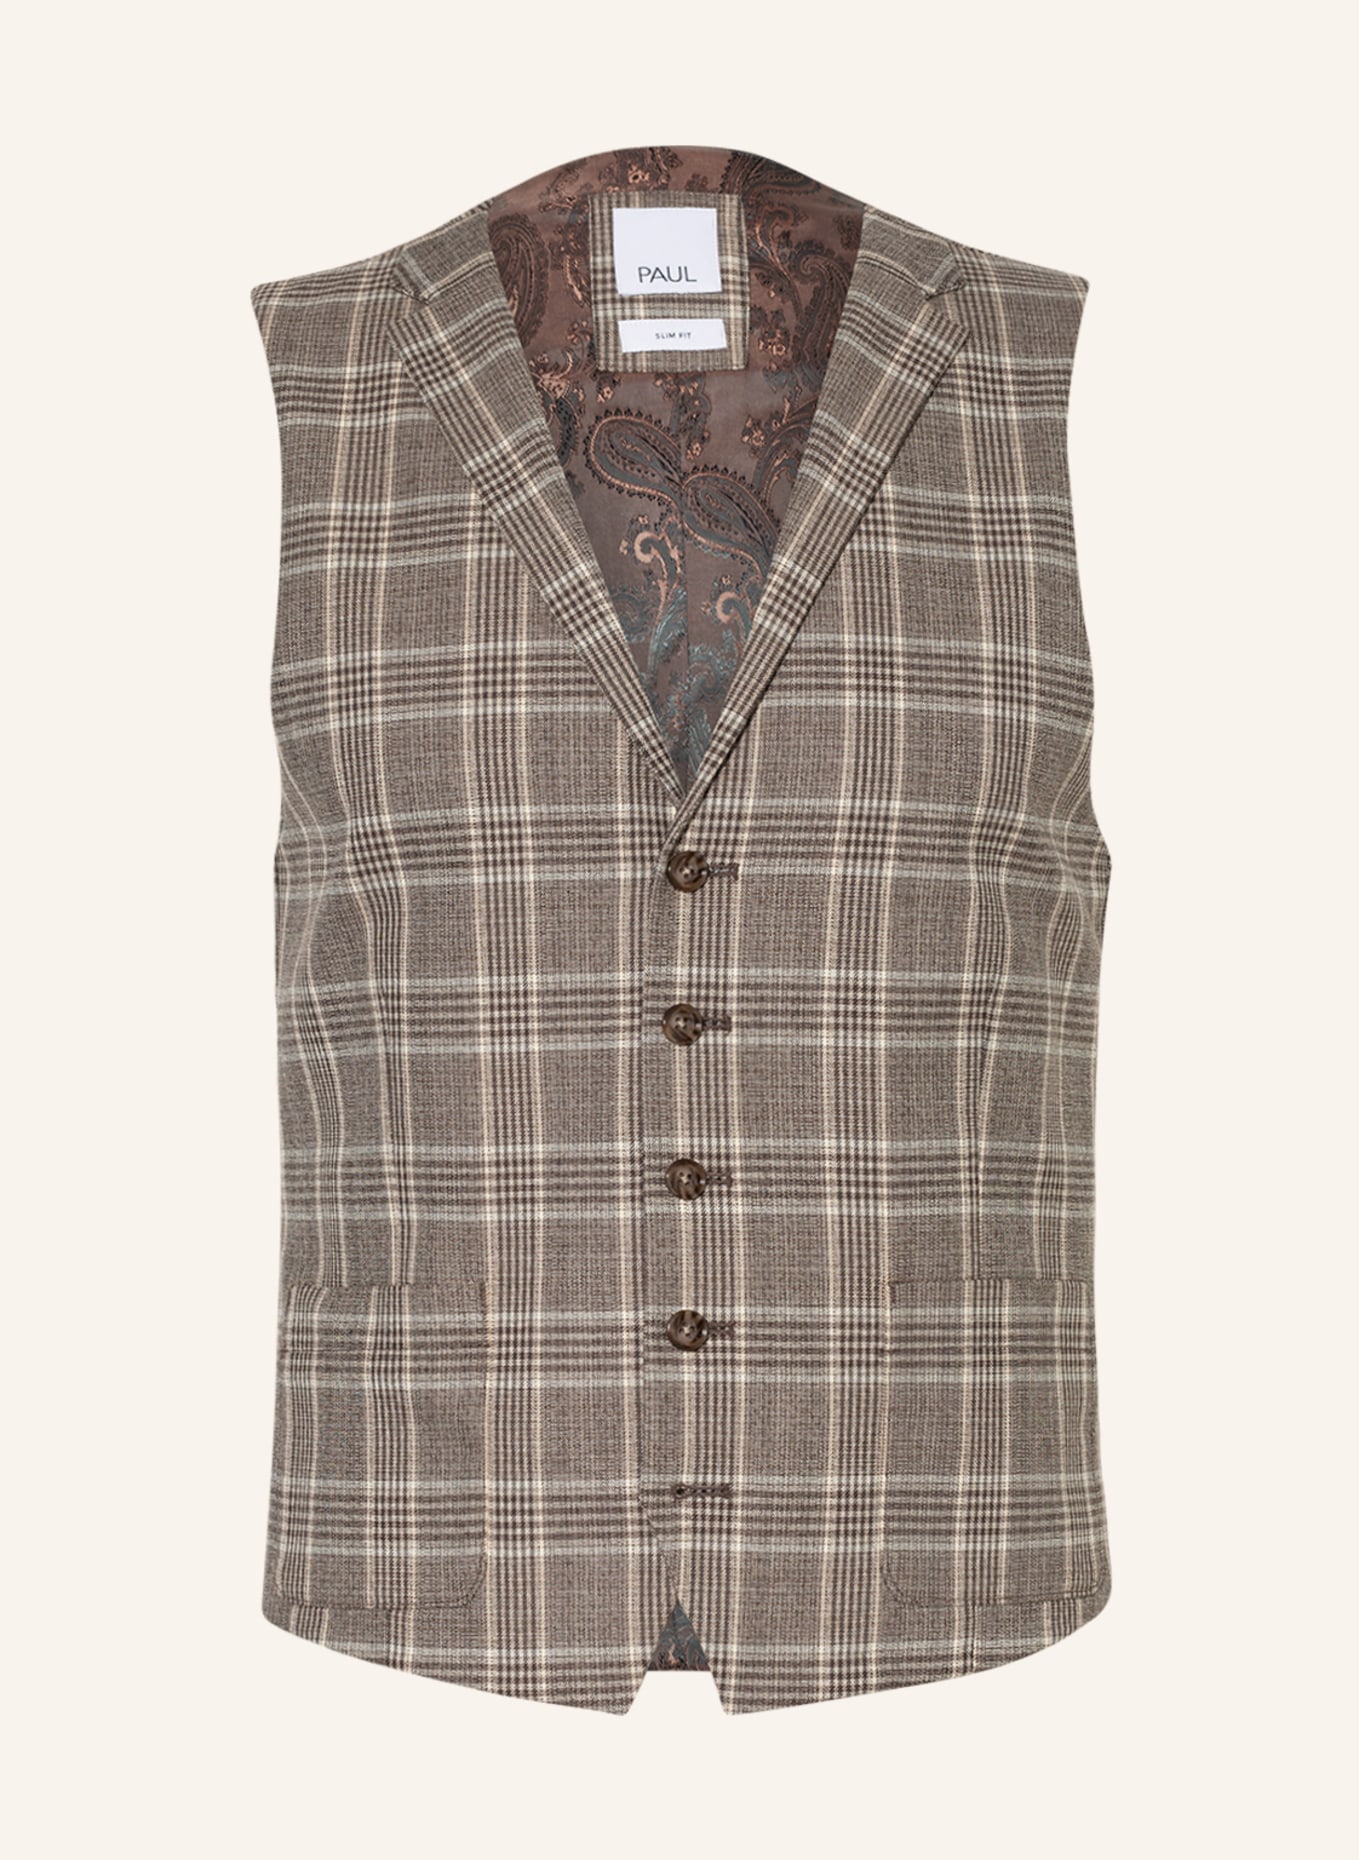 PAUL Suit vest slim fit, Color: LIGHT BROWN/ BROWN (Image 1)